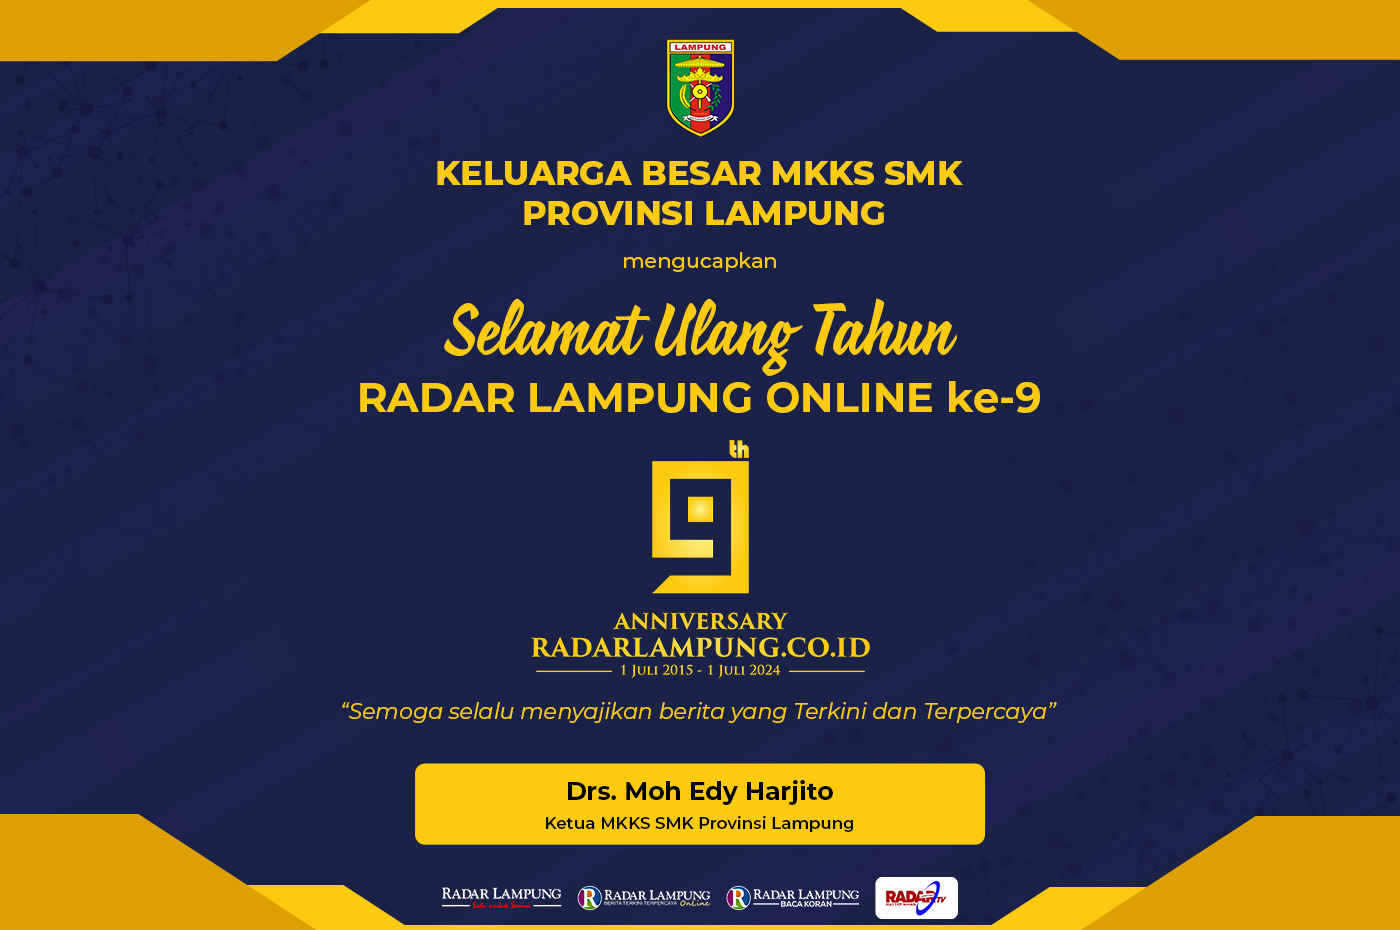 Keluarga Besar MKKS SMK Provinsi Lampung Mengucapkan Selamat Hari Jadi Radar Lampung Online ke-9